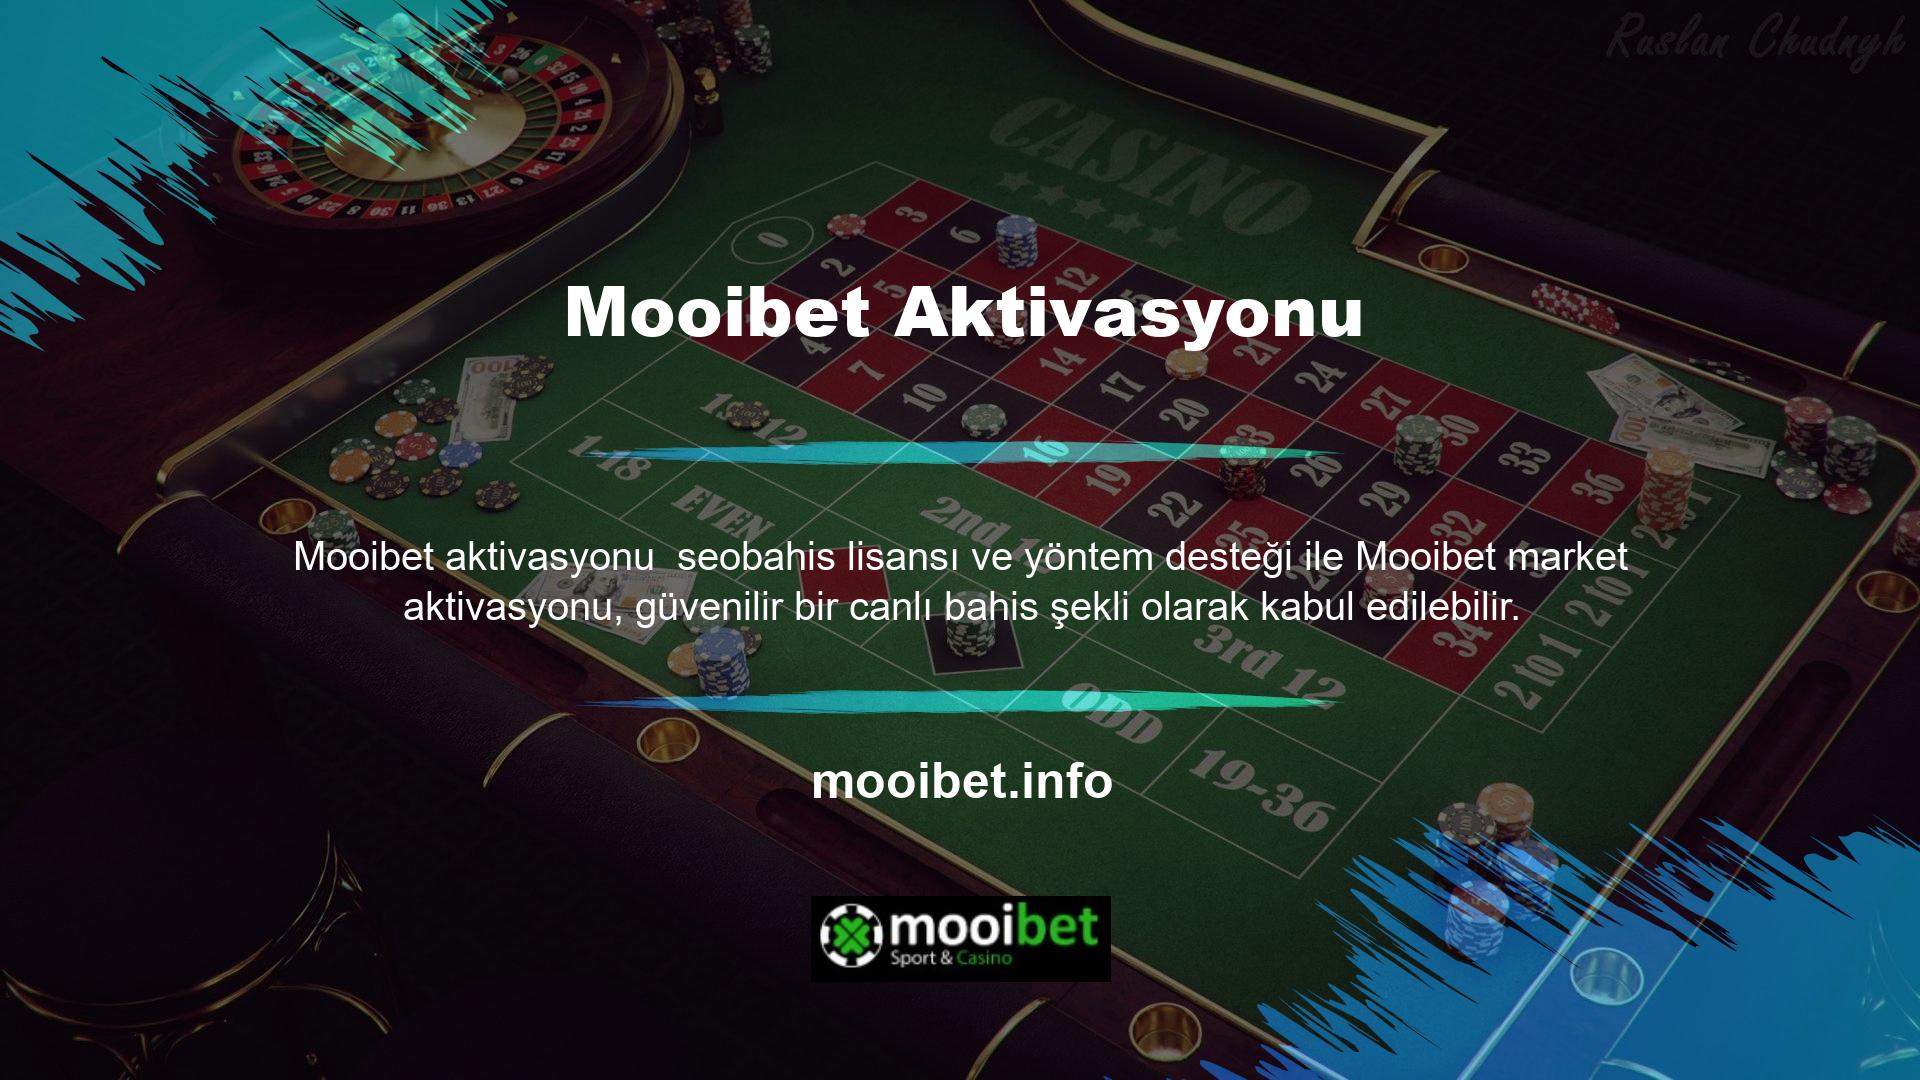 Aslında bu konfigürasyon Mooibet hızlı bir süreç yaşamasına ve yeni portalın genel yapısına ilişkin oldukça başarılı ilerlemeler kaydetmesine olanak sağladı